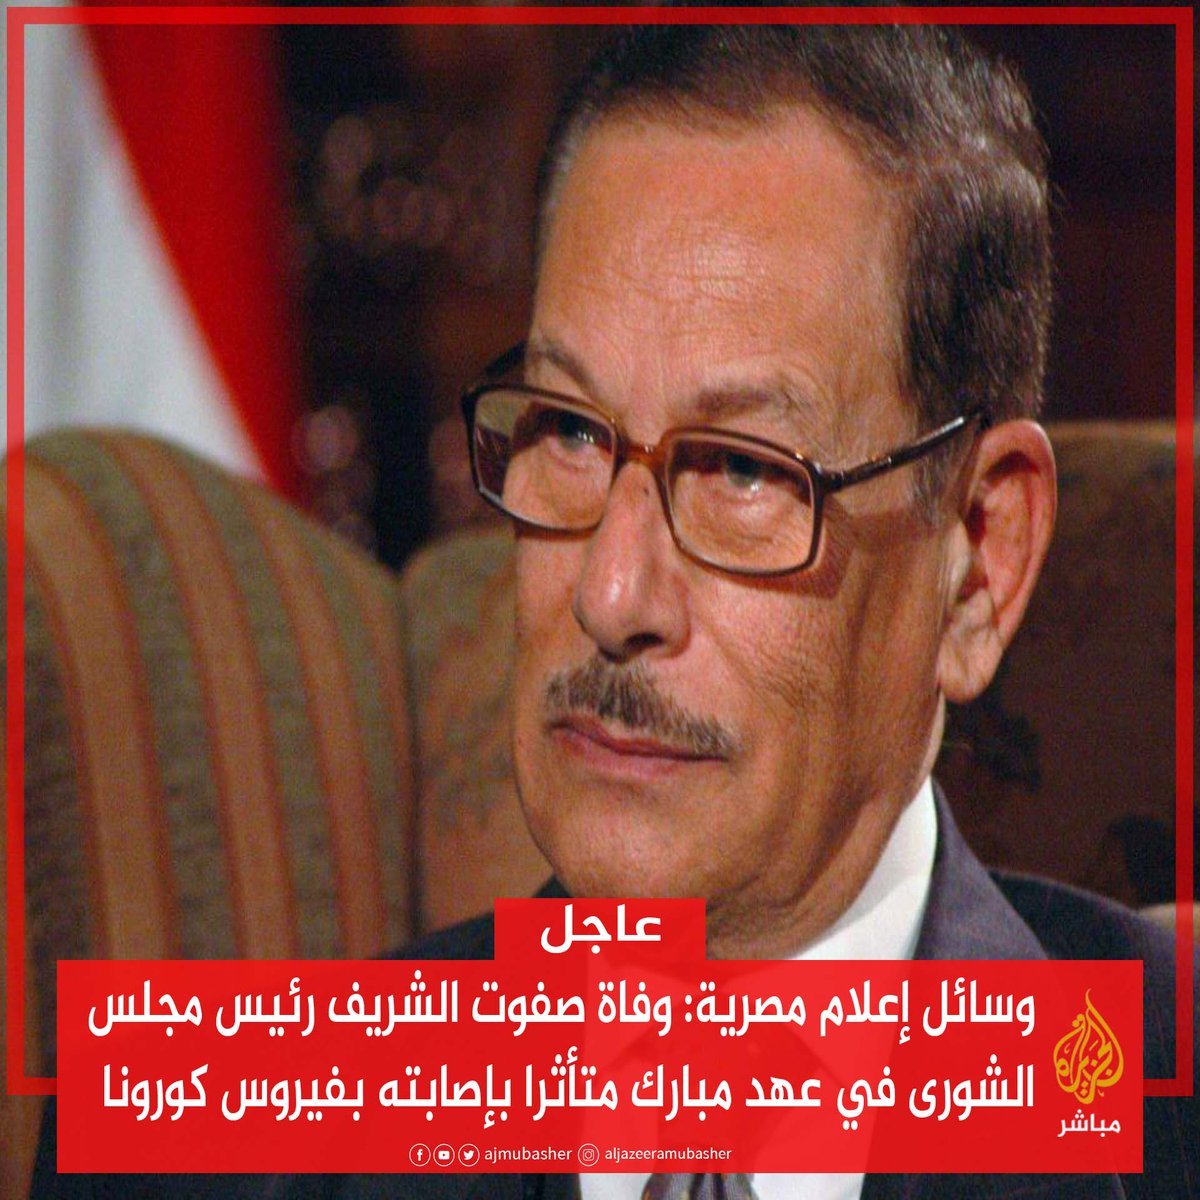 عاجل وسائل إعلام مصرية وفاة صفوت الشريف رئيس مجلس الشورى في عهد مبارك متأثرا بإصابته بفيروس كورونا مصر